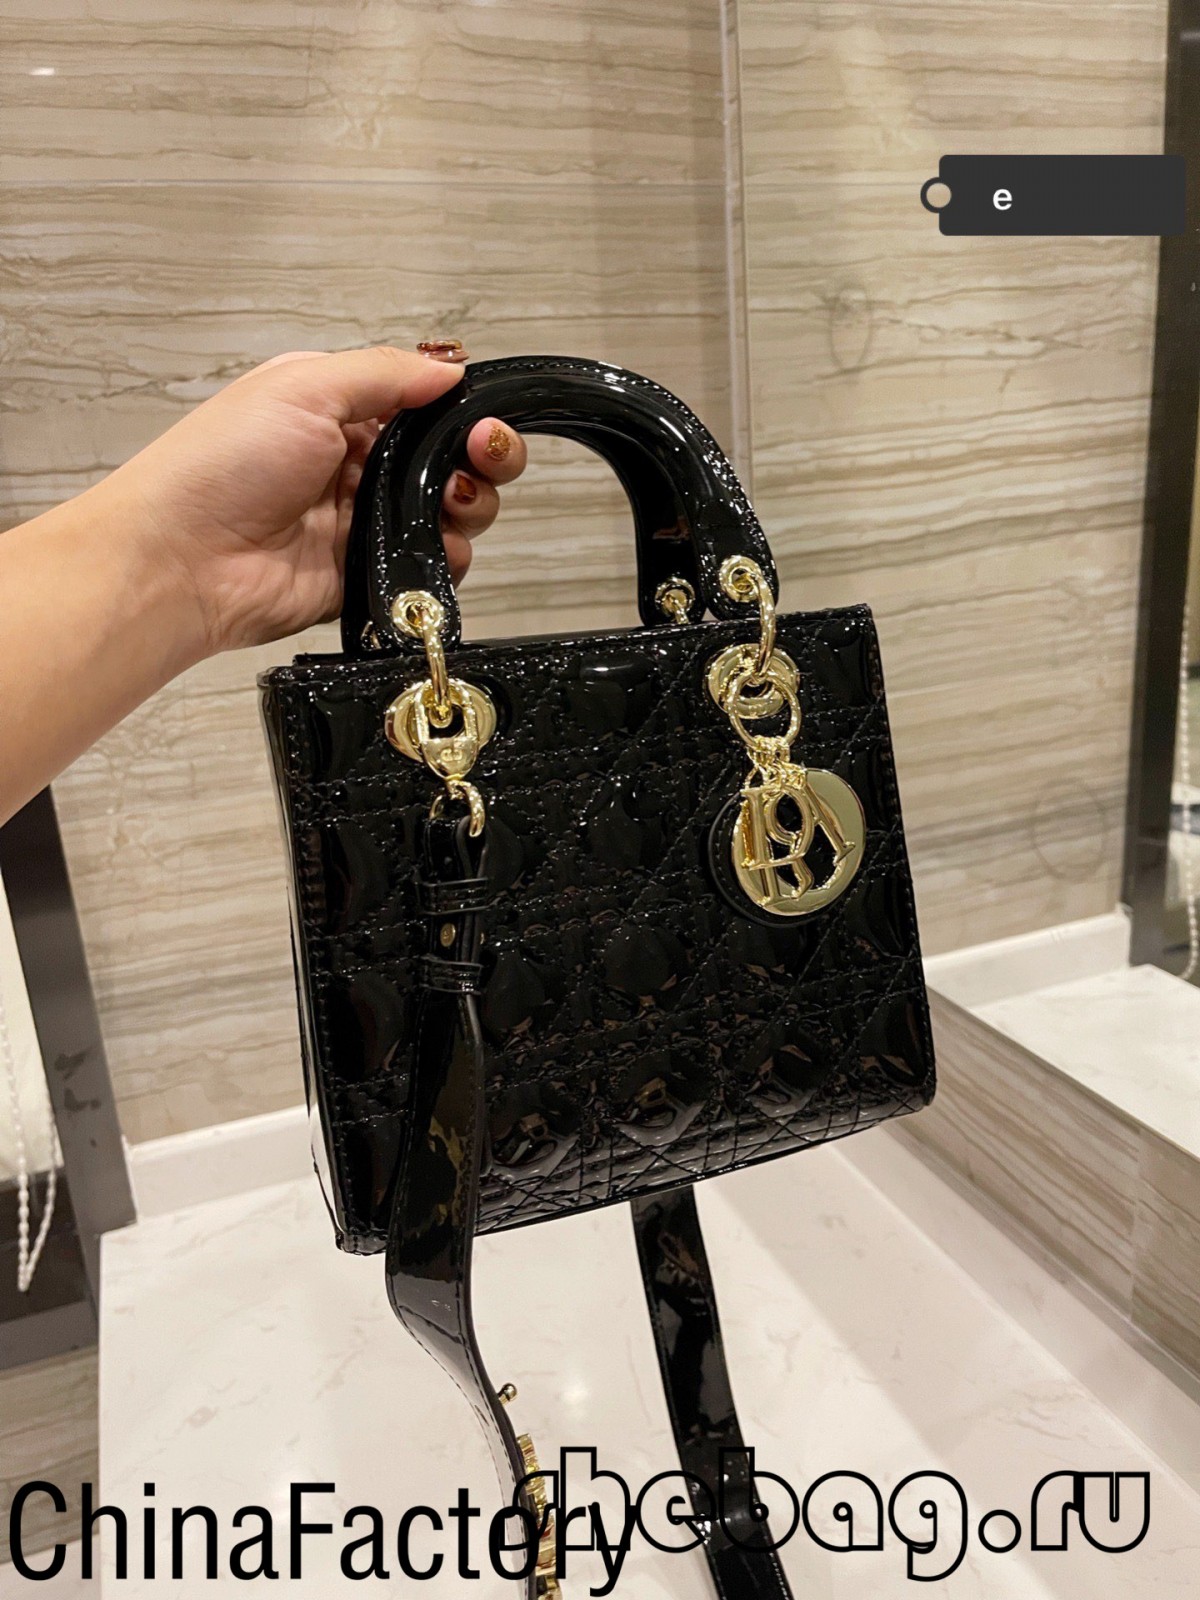 Online predaj minitašky Replica Lady Dior najvyššej kvality (Najhoršie v roku 2022) - Internetový obchod s falošnou taškou Louis Vuitton najvyššej kvality, Replica designer bag ru